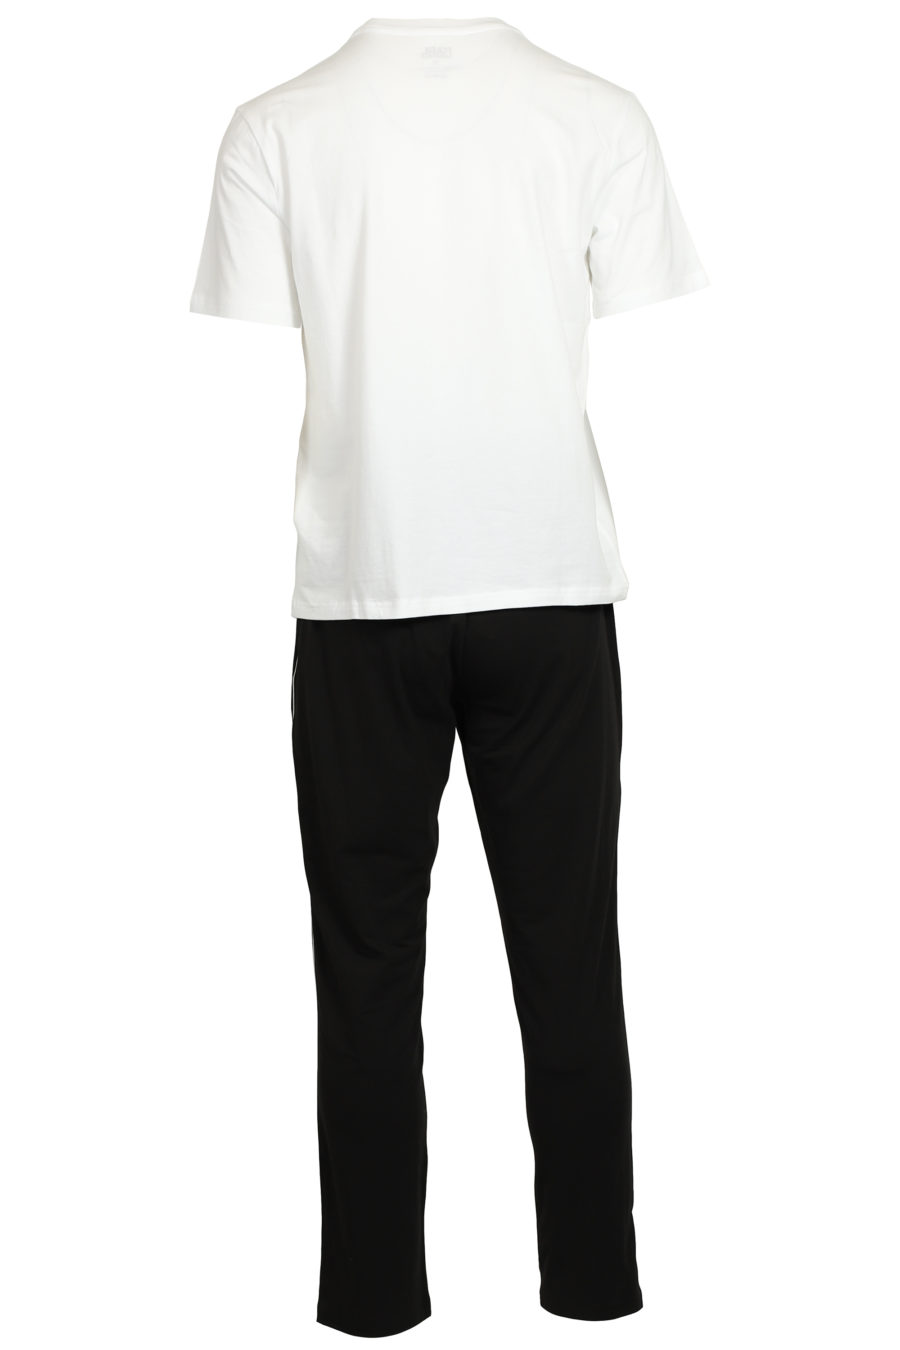 Set de pijama negro y blanco con logo en goma - IMG 3736